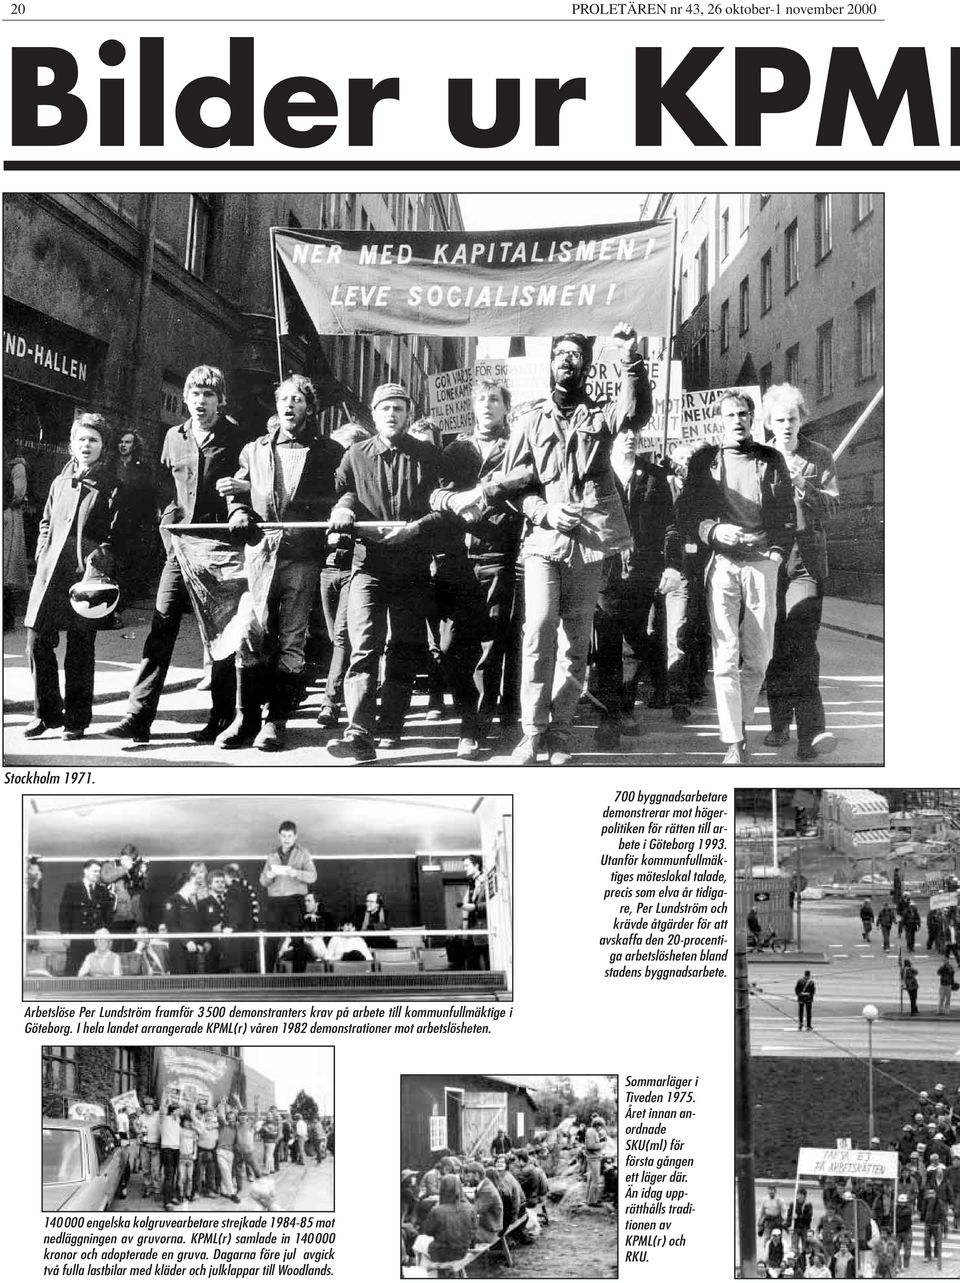 Arbetslöse Per Lundström framför 3500 demonstranters krav på arbete till kommunfullmäktige i Göteborg. I hela landet arrangerade KPML(r) våren 1982 demonstrationer mot arbetslösheten.